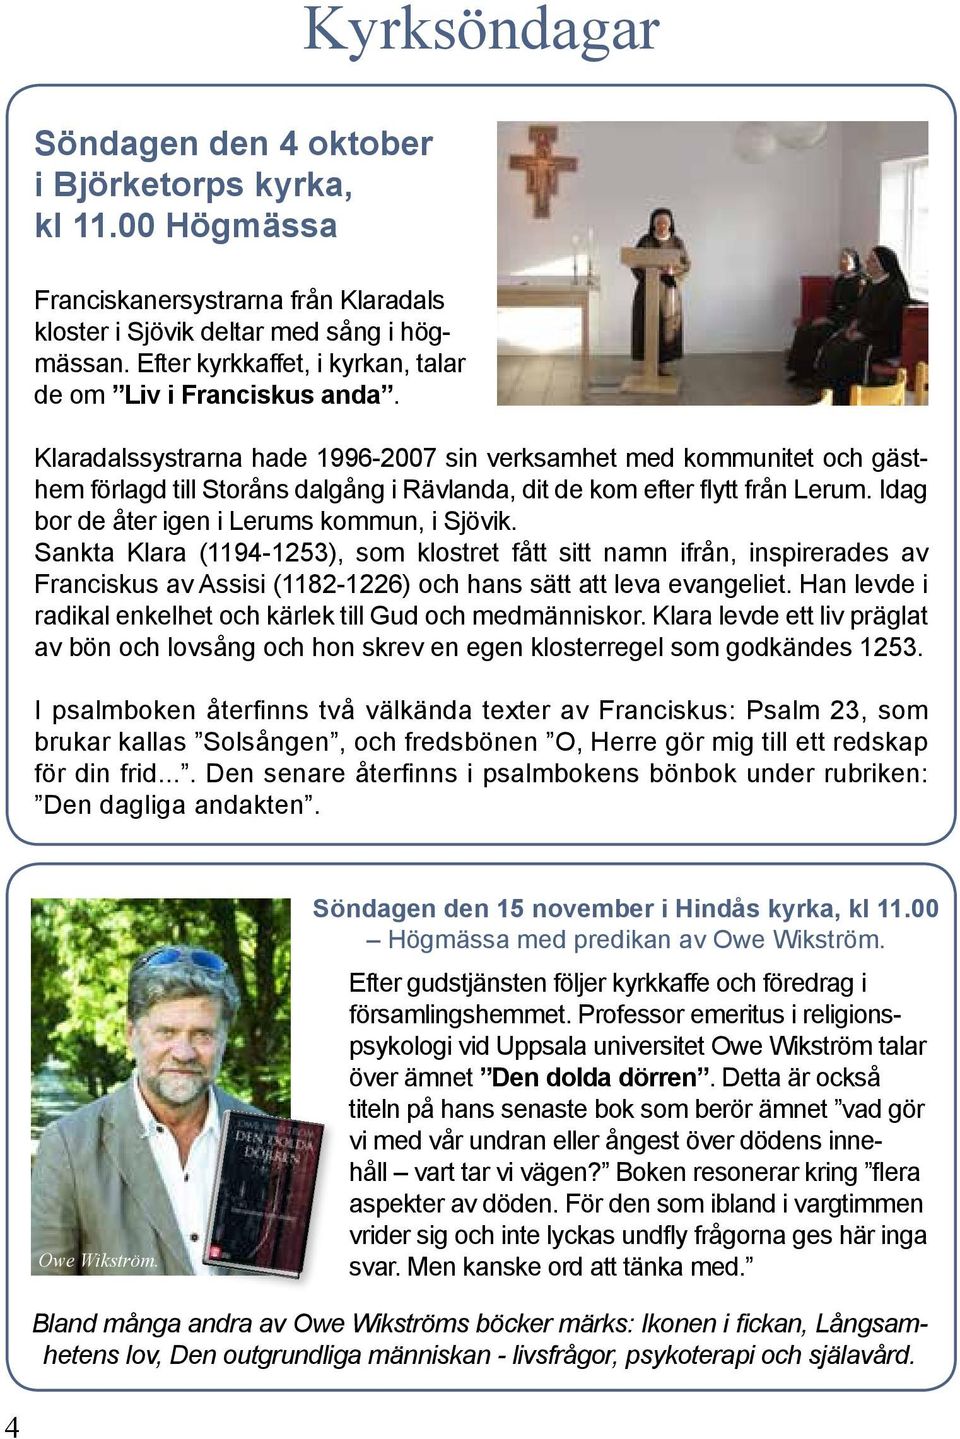 Klaradalssystrarna hade 1996-2007 sin verksamhet med kommunitet och gästhem förlagd till Storåns dalgång i Rävlanda, dit de kom efter flytt från Lerum. Idag bor de åter igen i Lerums kommun, i Sjövik.